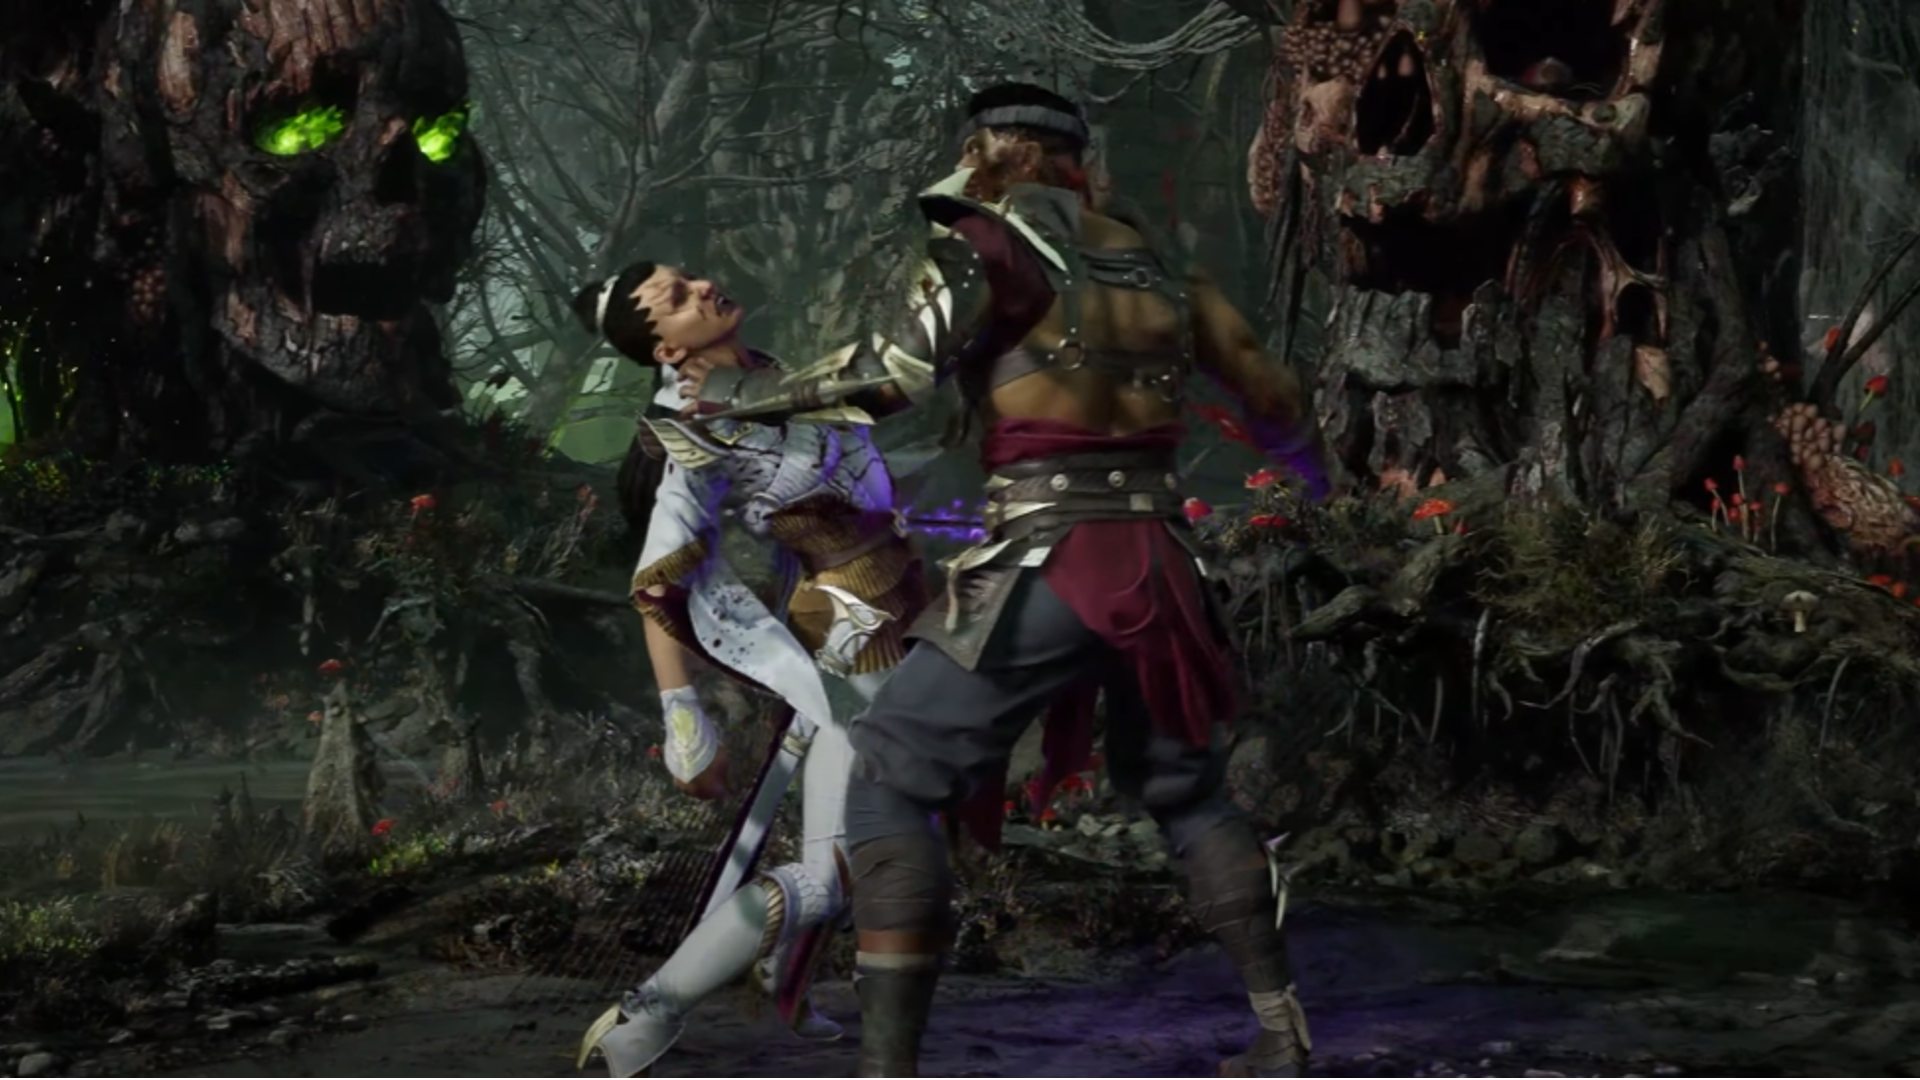 Mortal Kombat 1 Characters: Havik can be seen fighting Ashrah